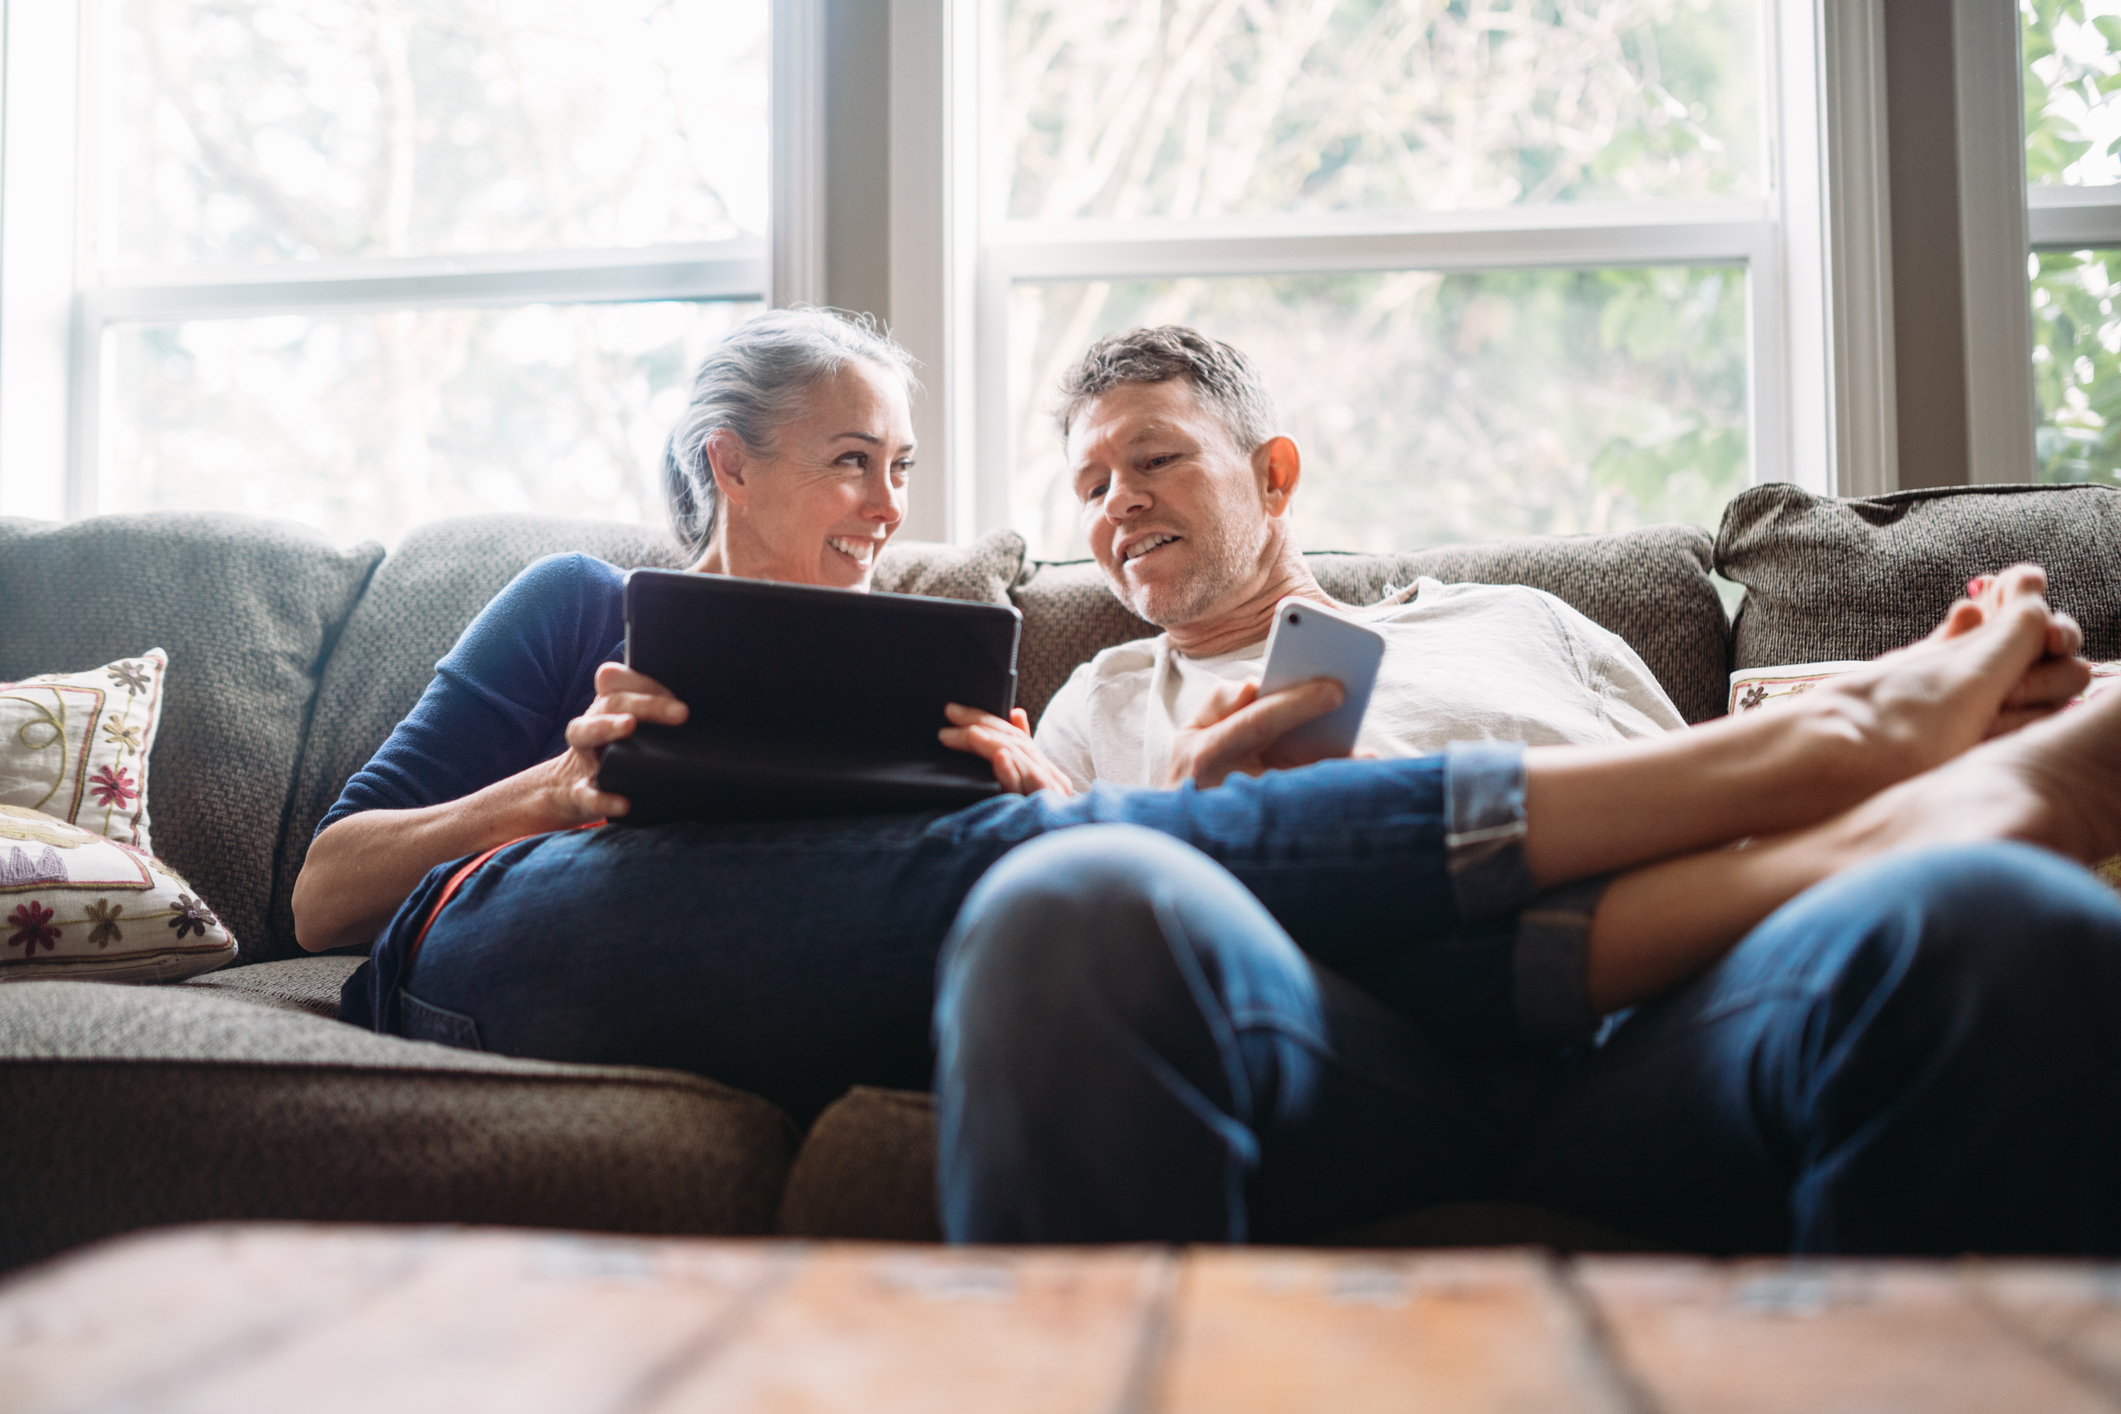 Une femme et un homme sont assis sur le canapé et regardent ensemble quelque chose sur leur ordinateur portable.